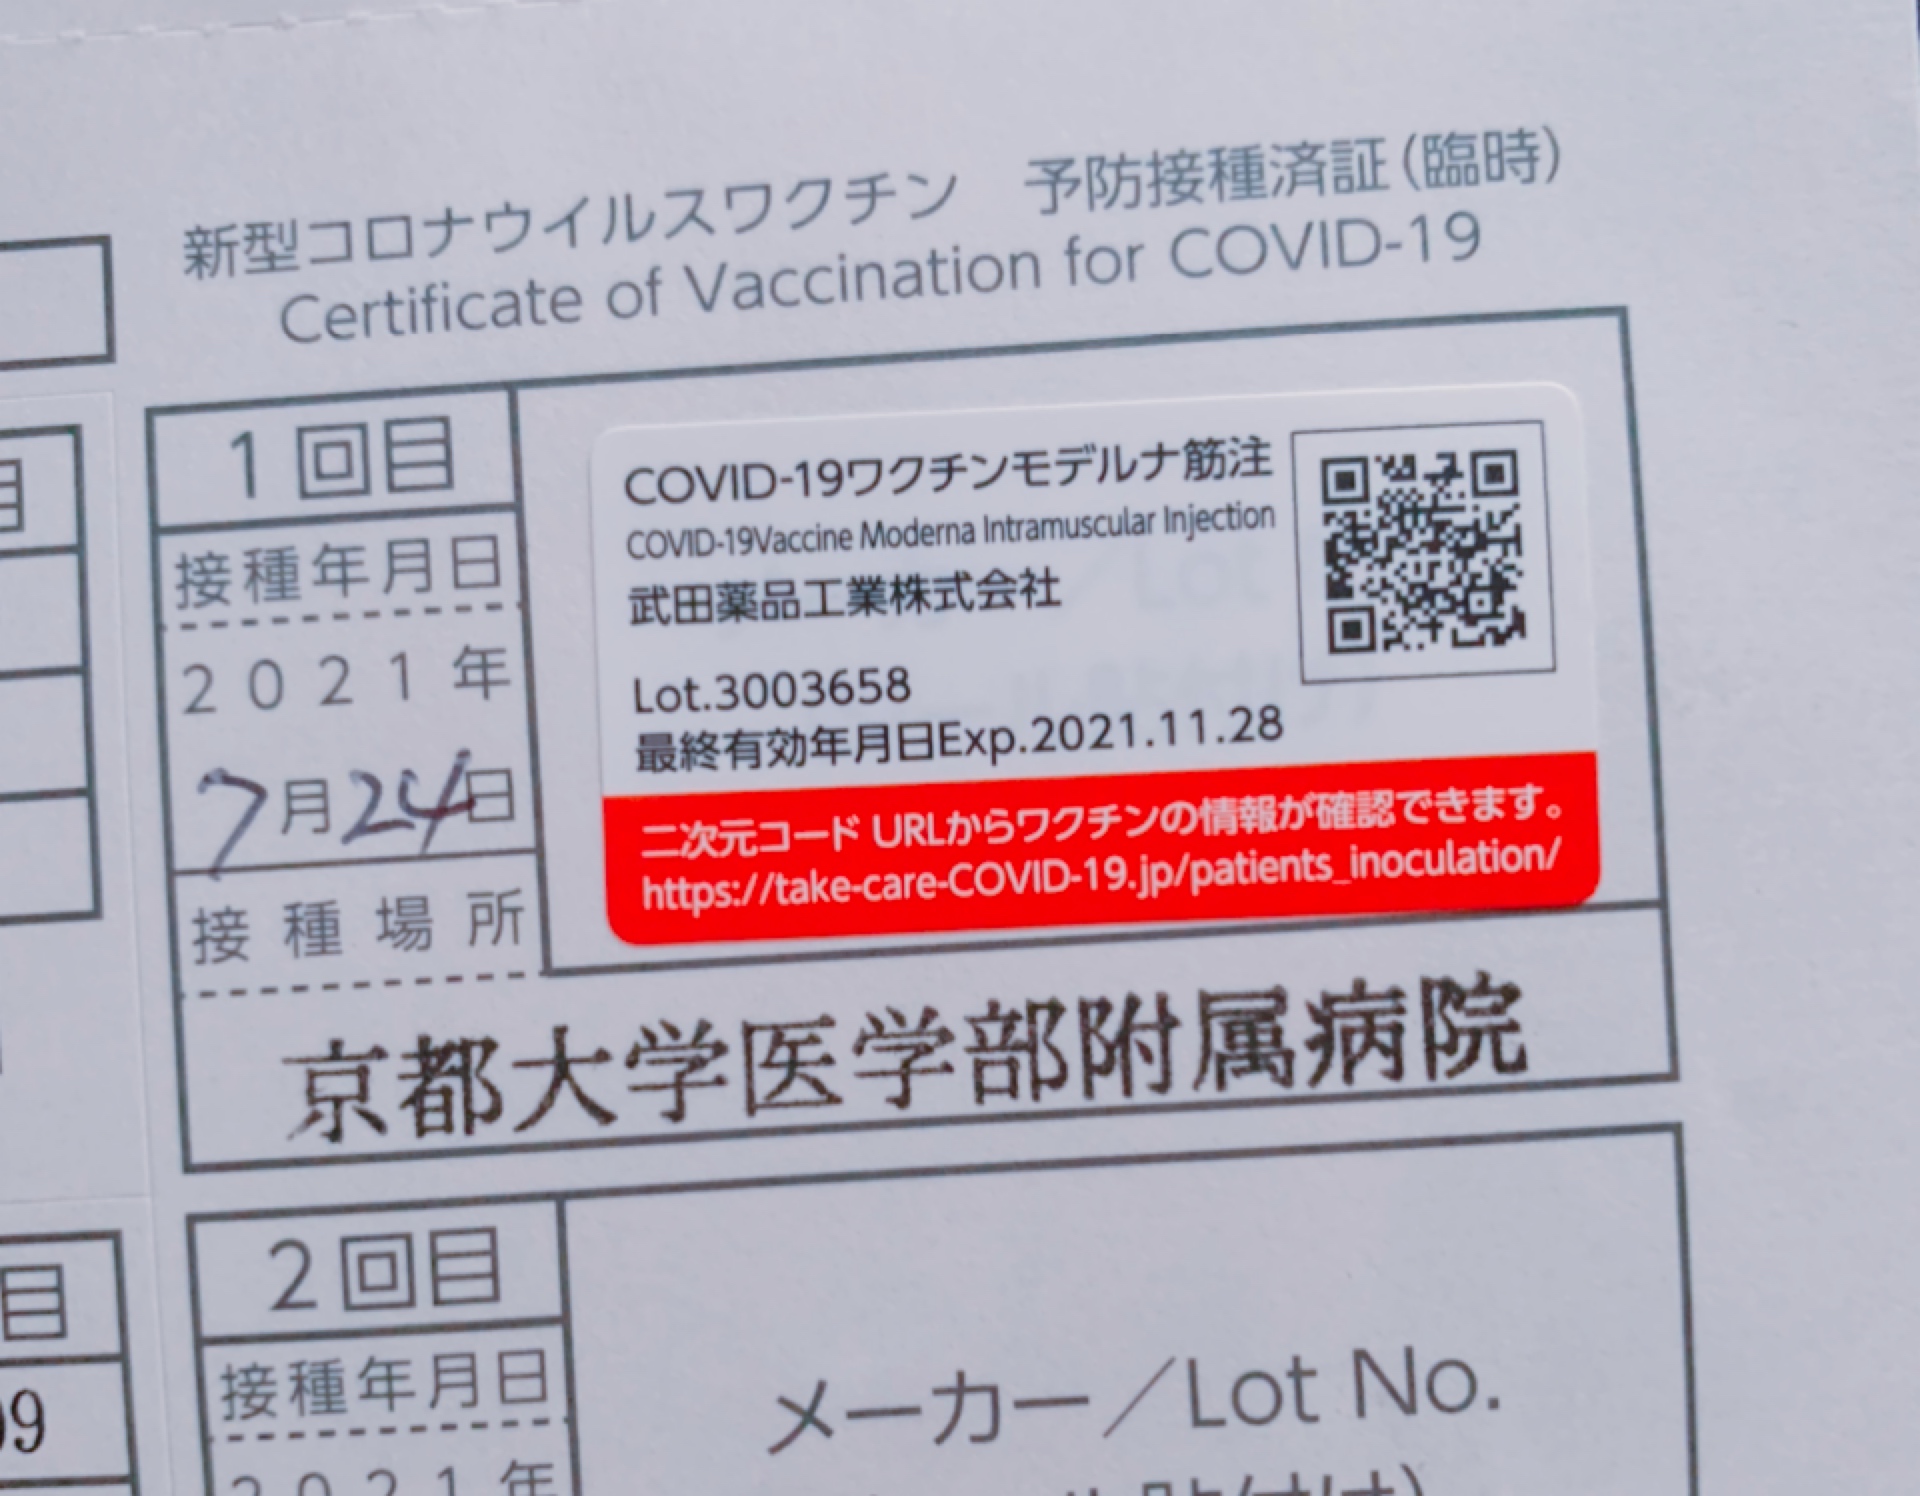 【京大生向】covid-19ワクチン接種ルポ